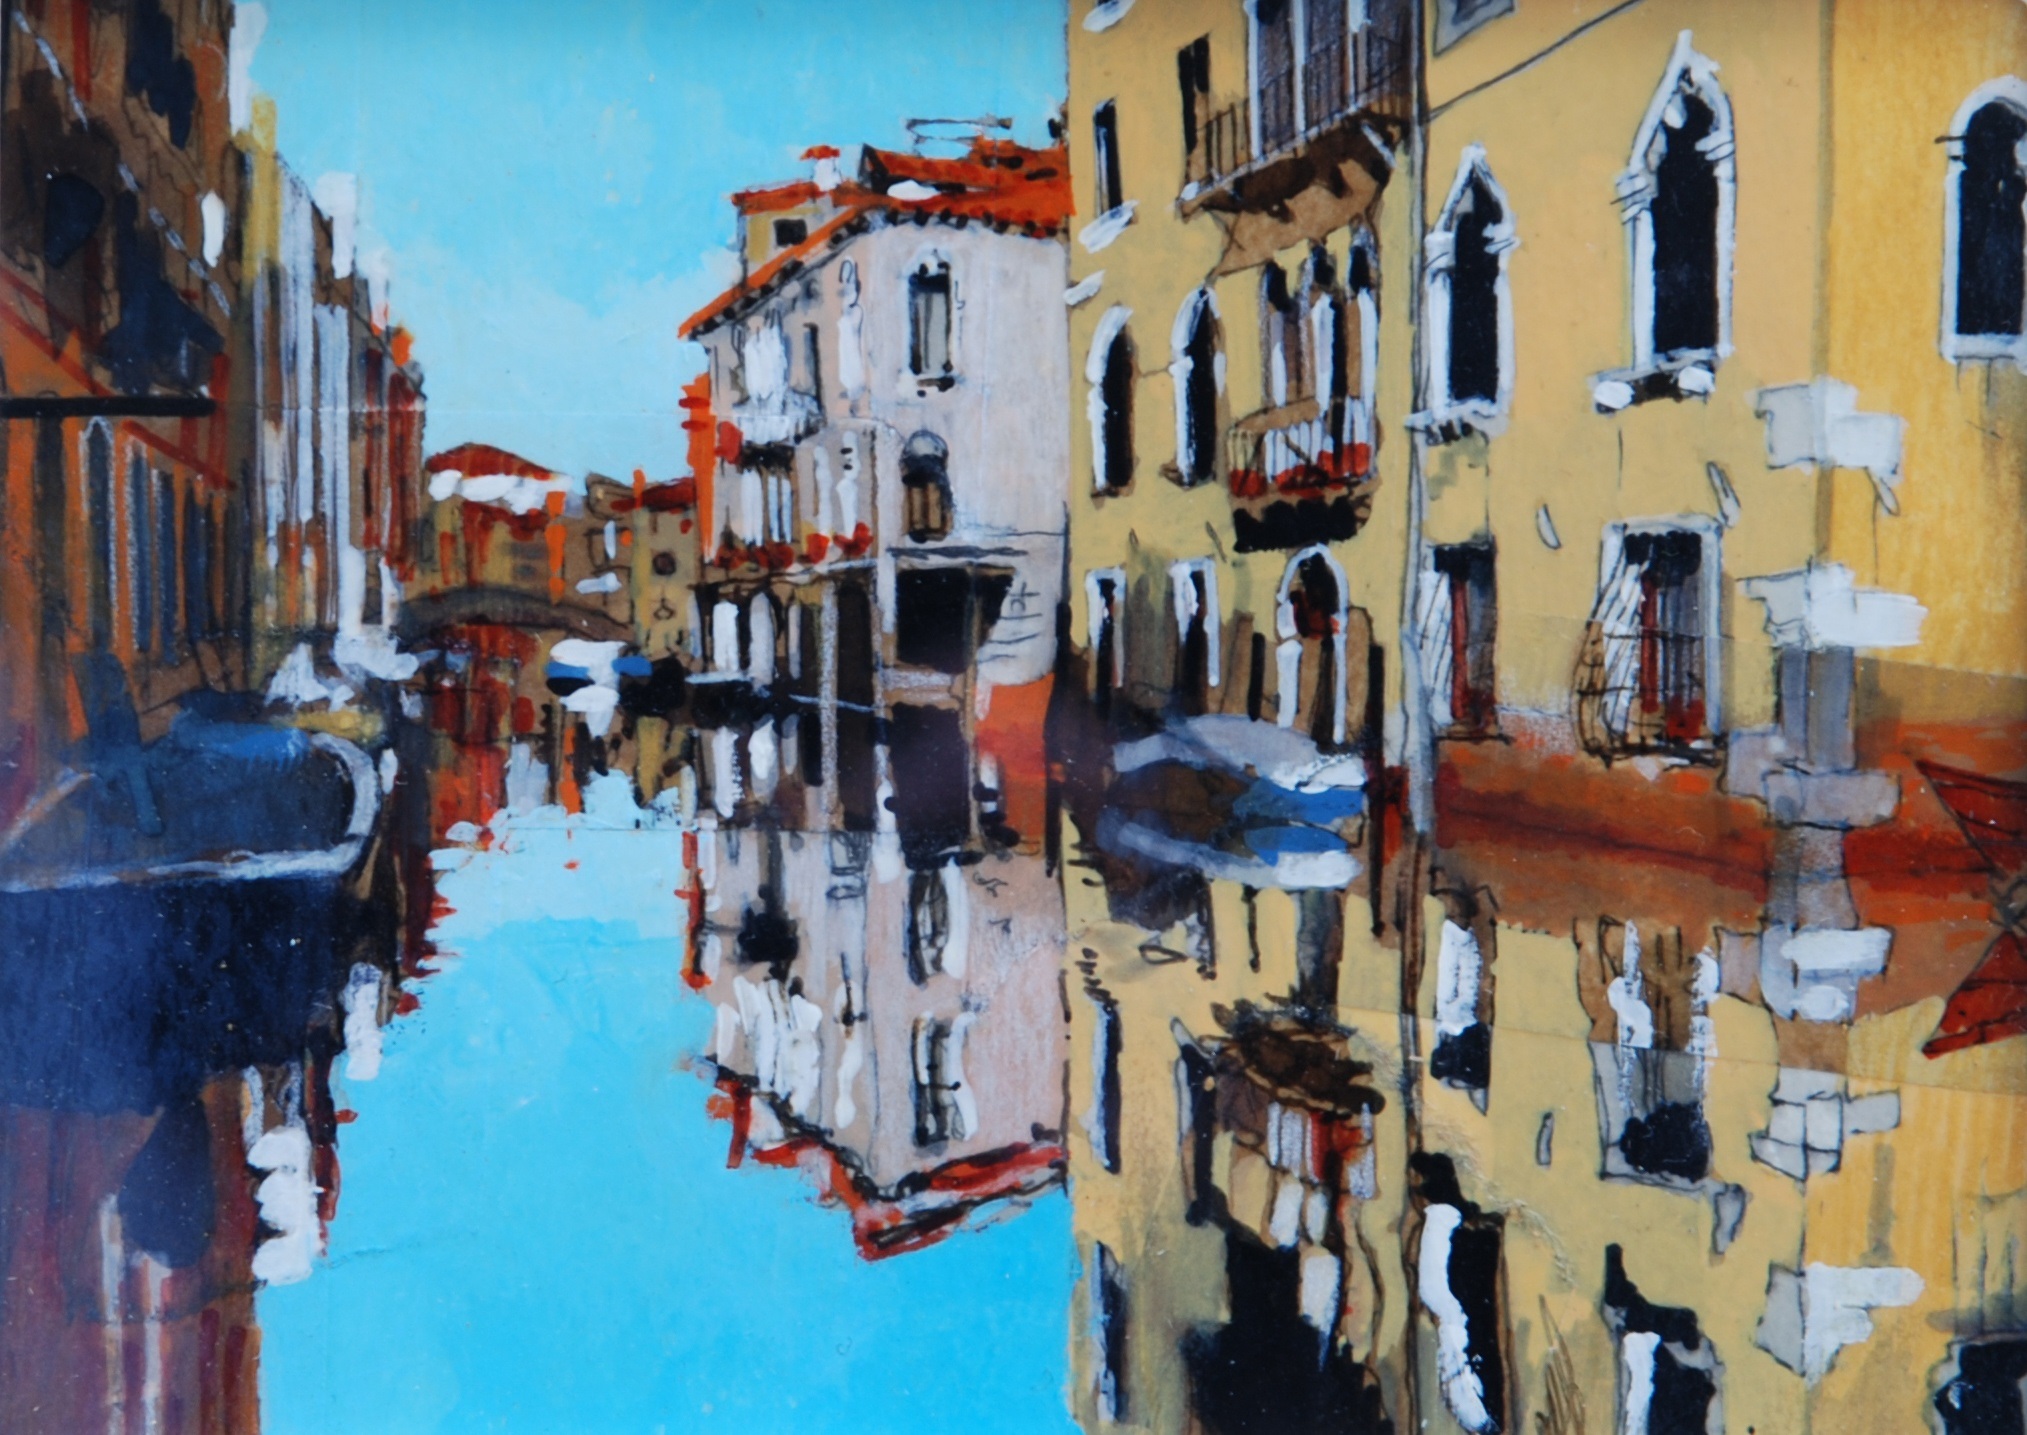 'Venice Sketch' by artist Malcolm Cheape